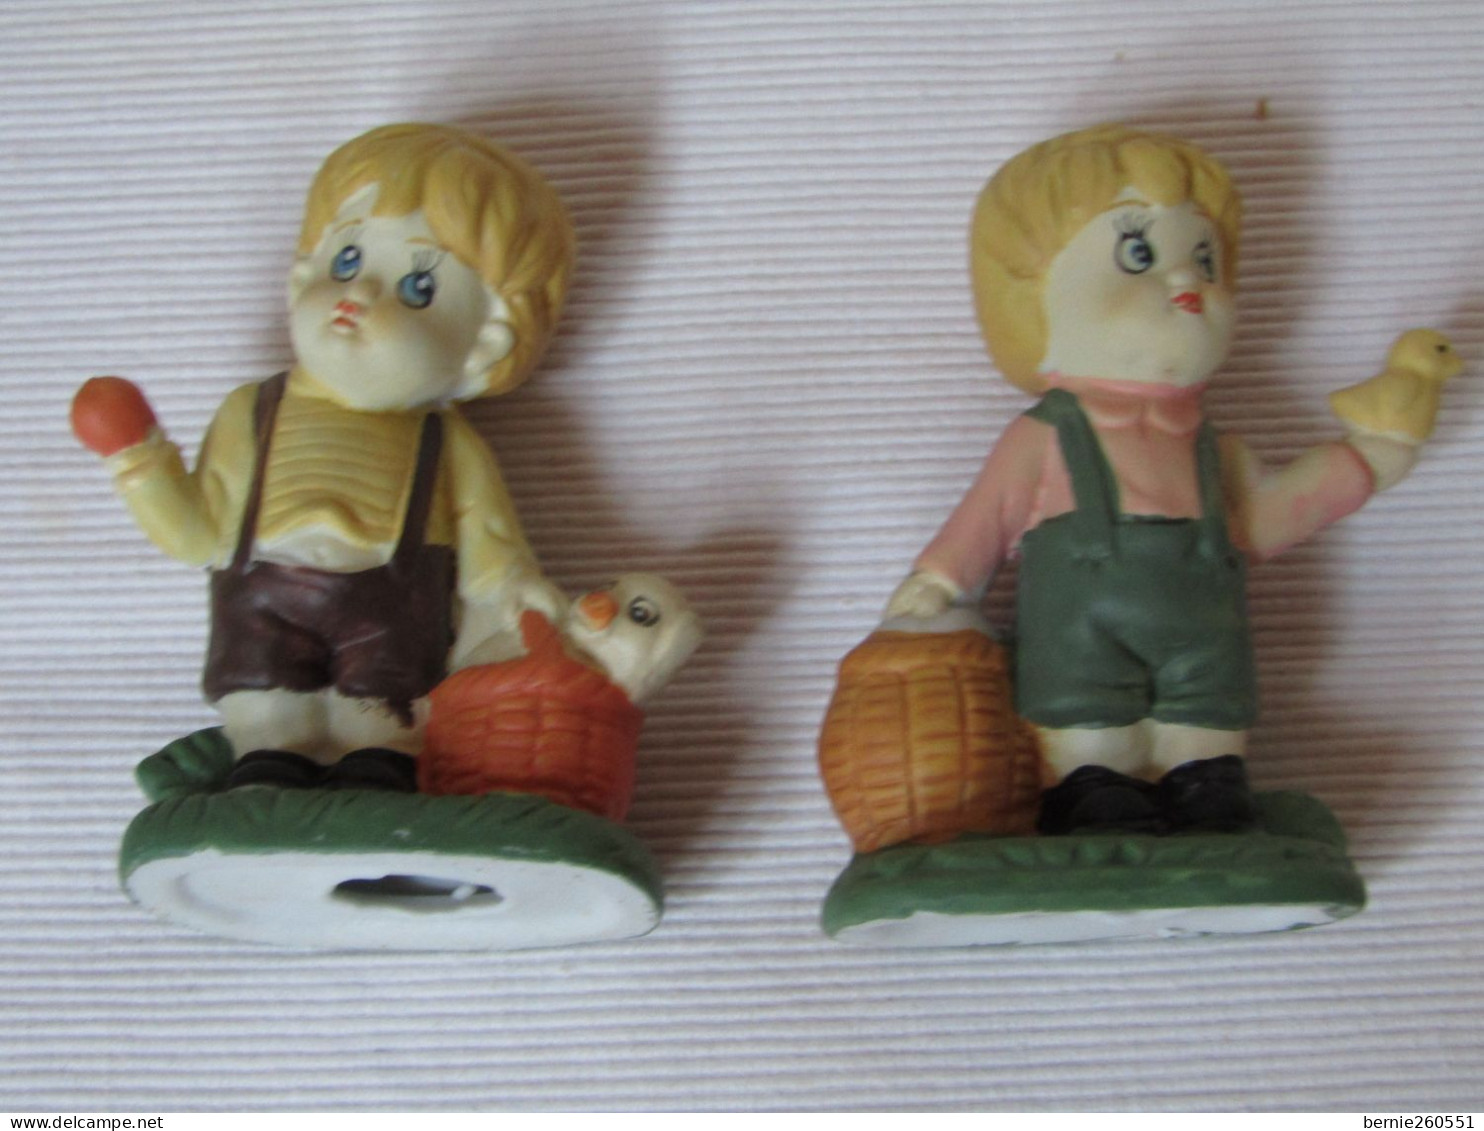 Splendide duo de statuettes en porcelaine allemande